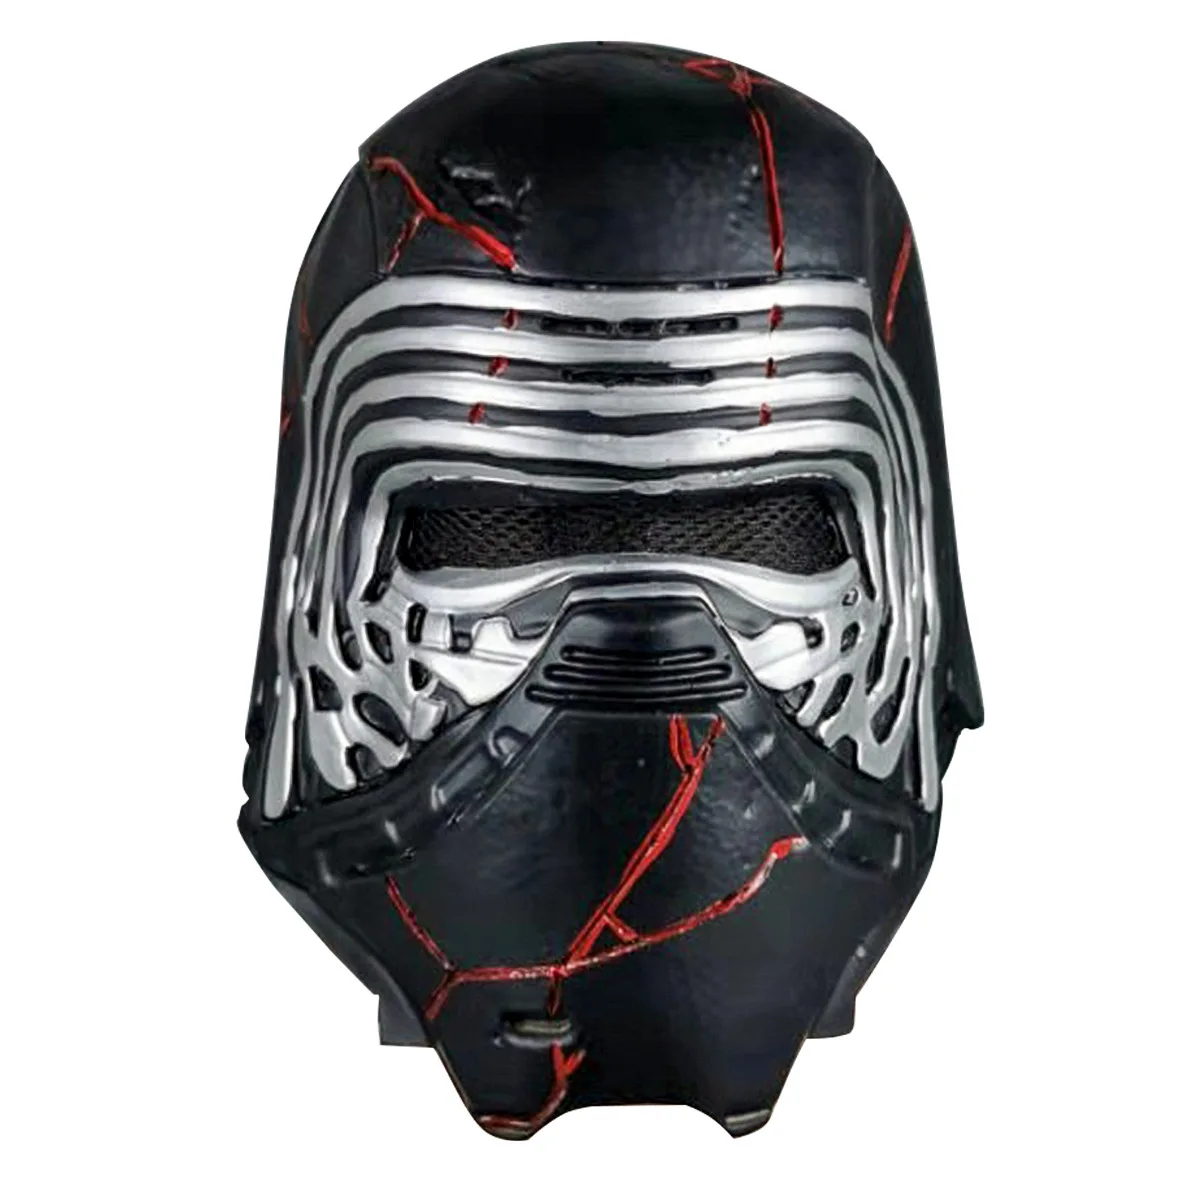 Star Wars The Rise of Skywalker Supreme Leader Kylo Ren Force Rage Mask A5 for sale online 